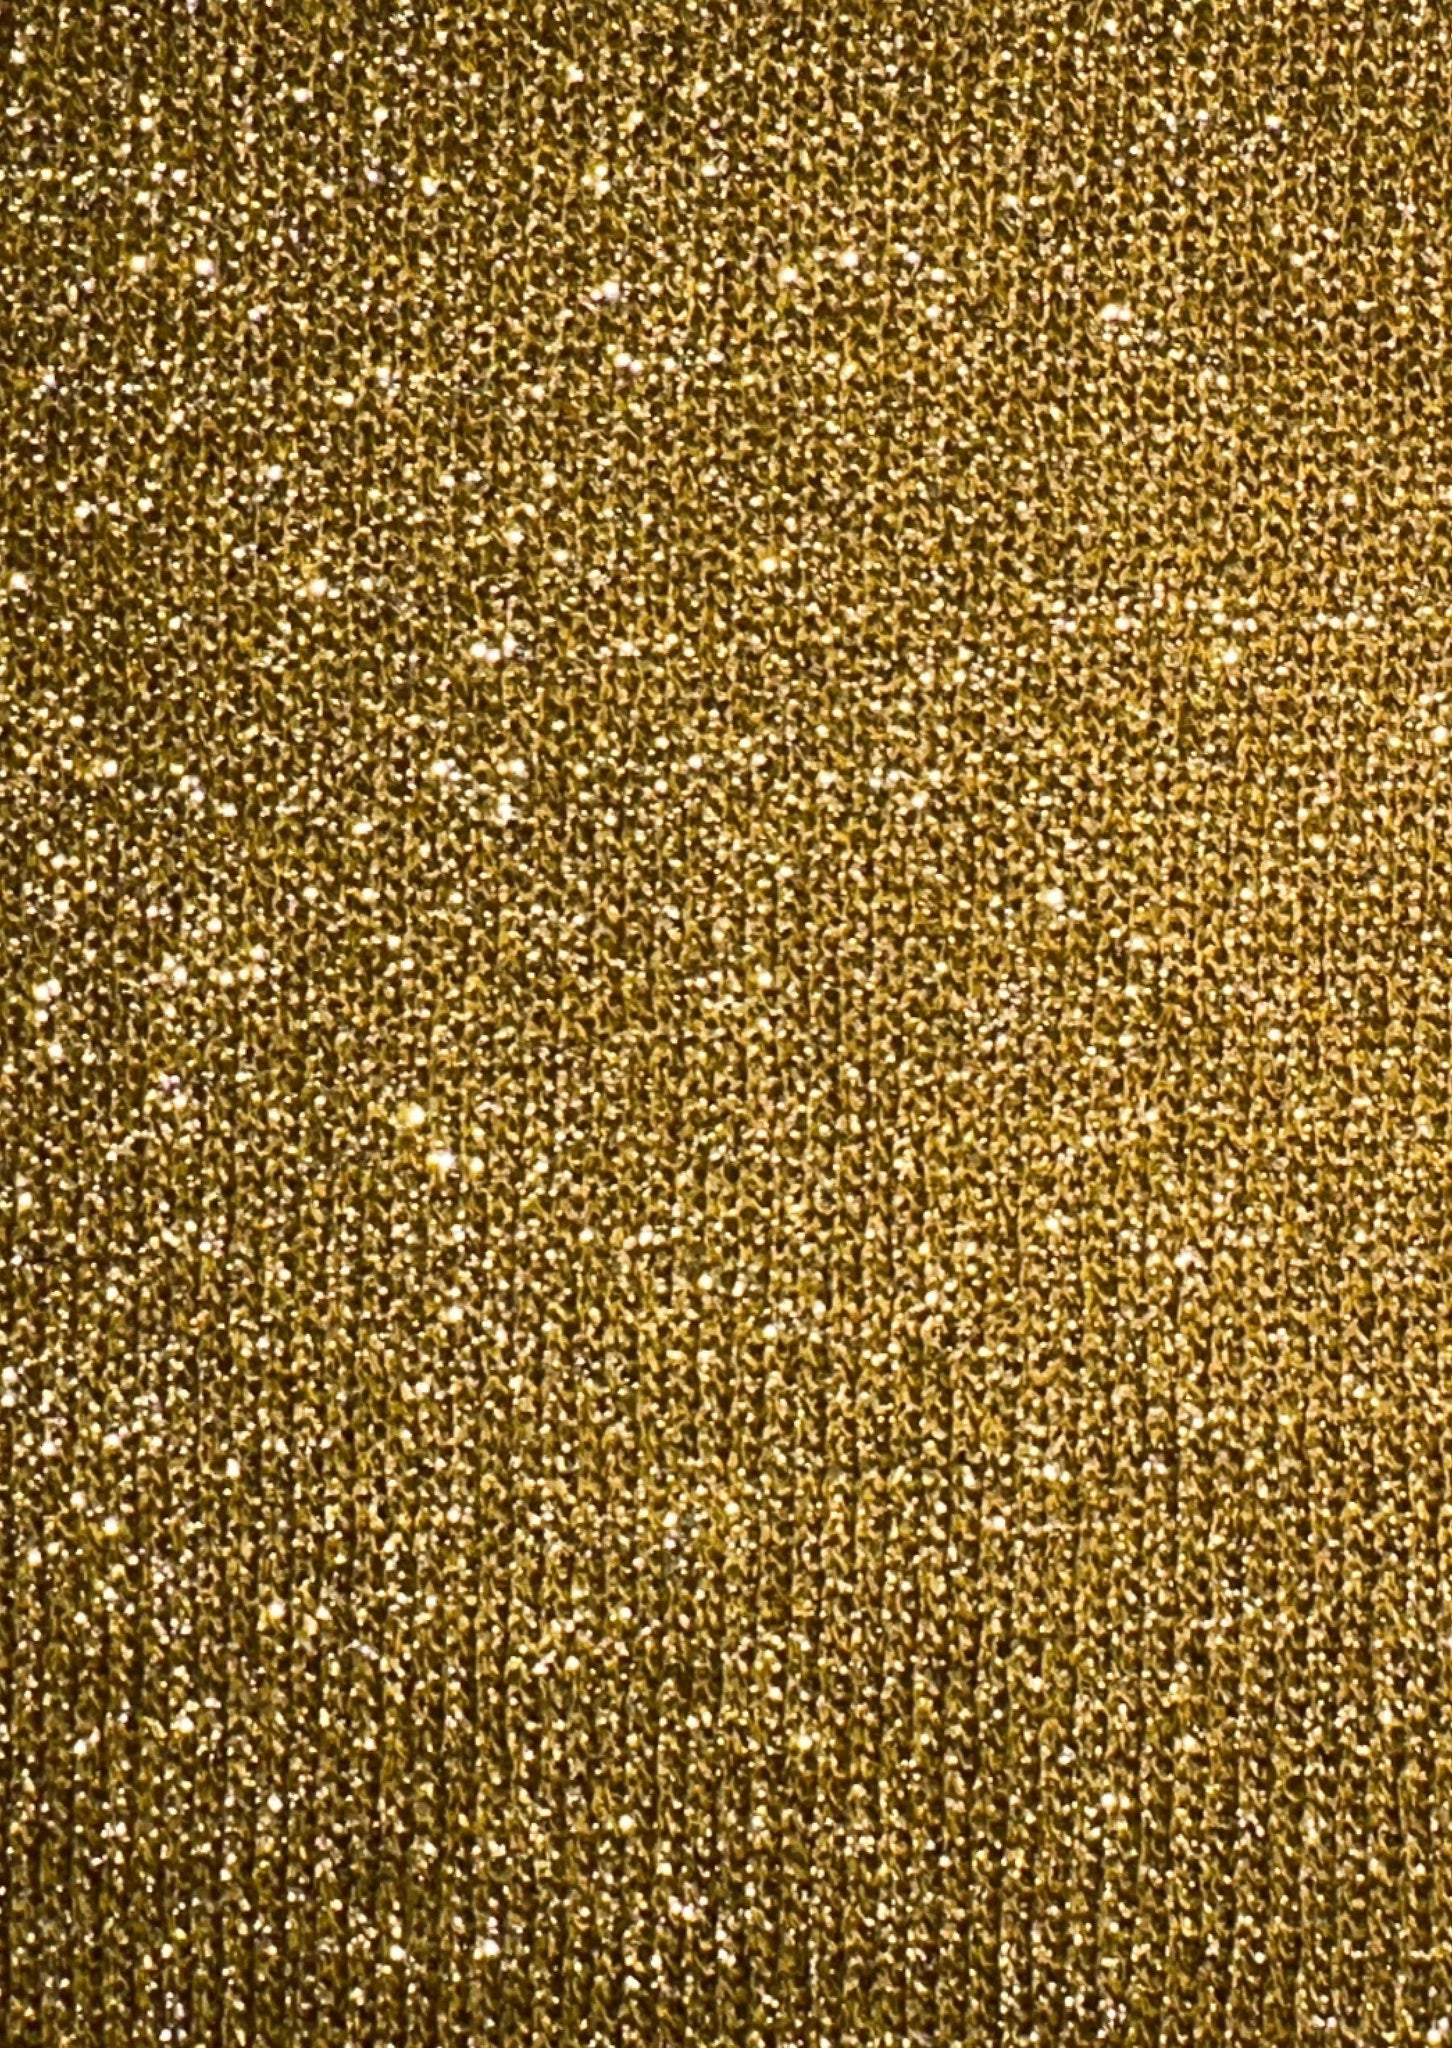 Aurea metallic gold Top - Yilou - metallic gold halter top - halter top- metallic yarn- gold glitter top